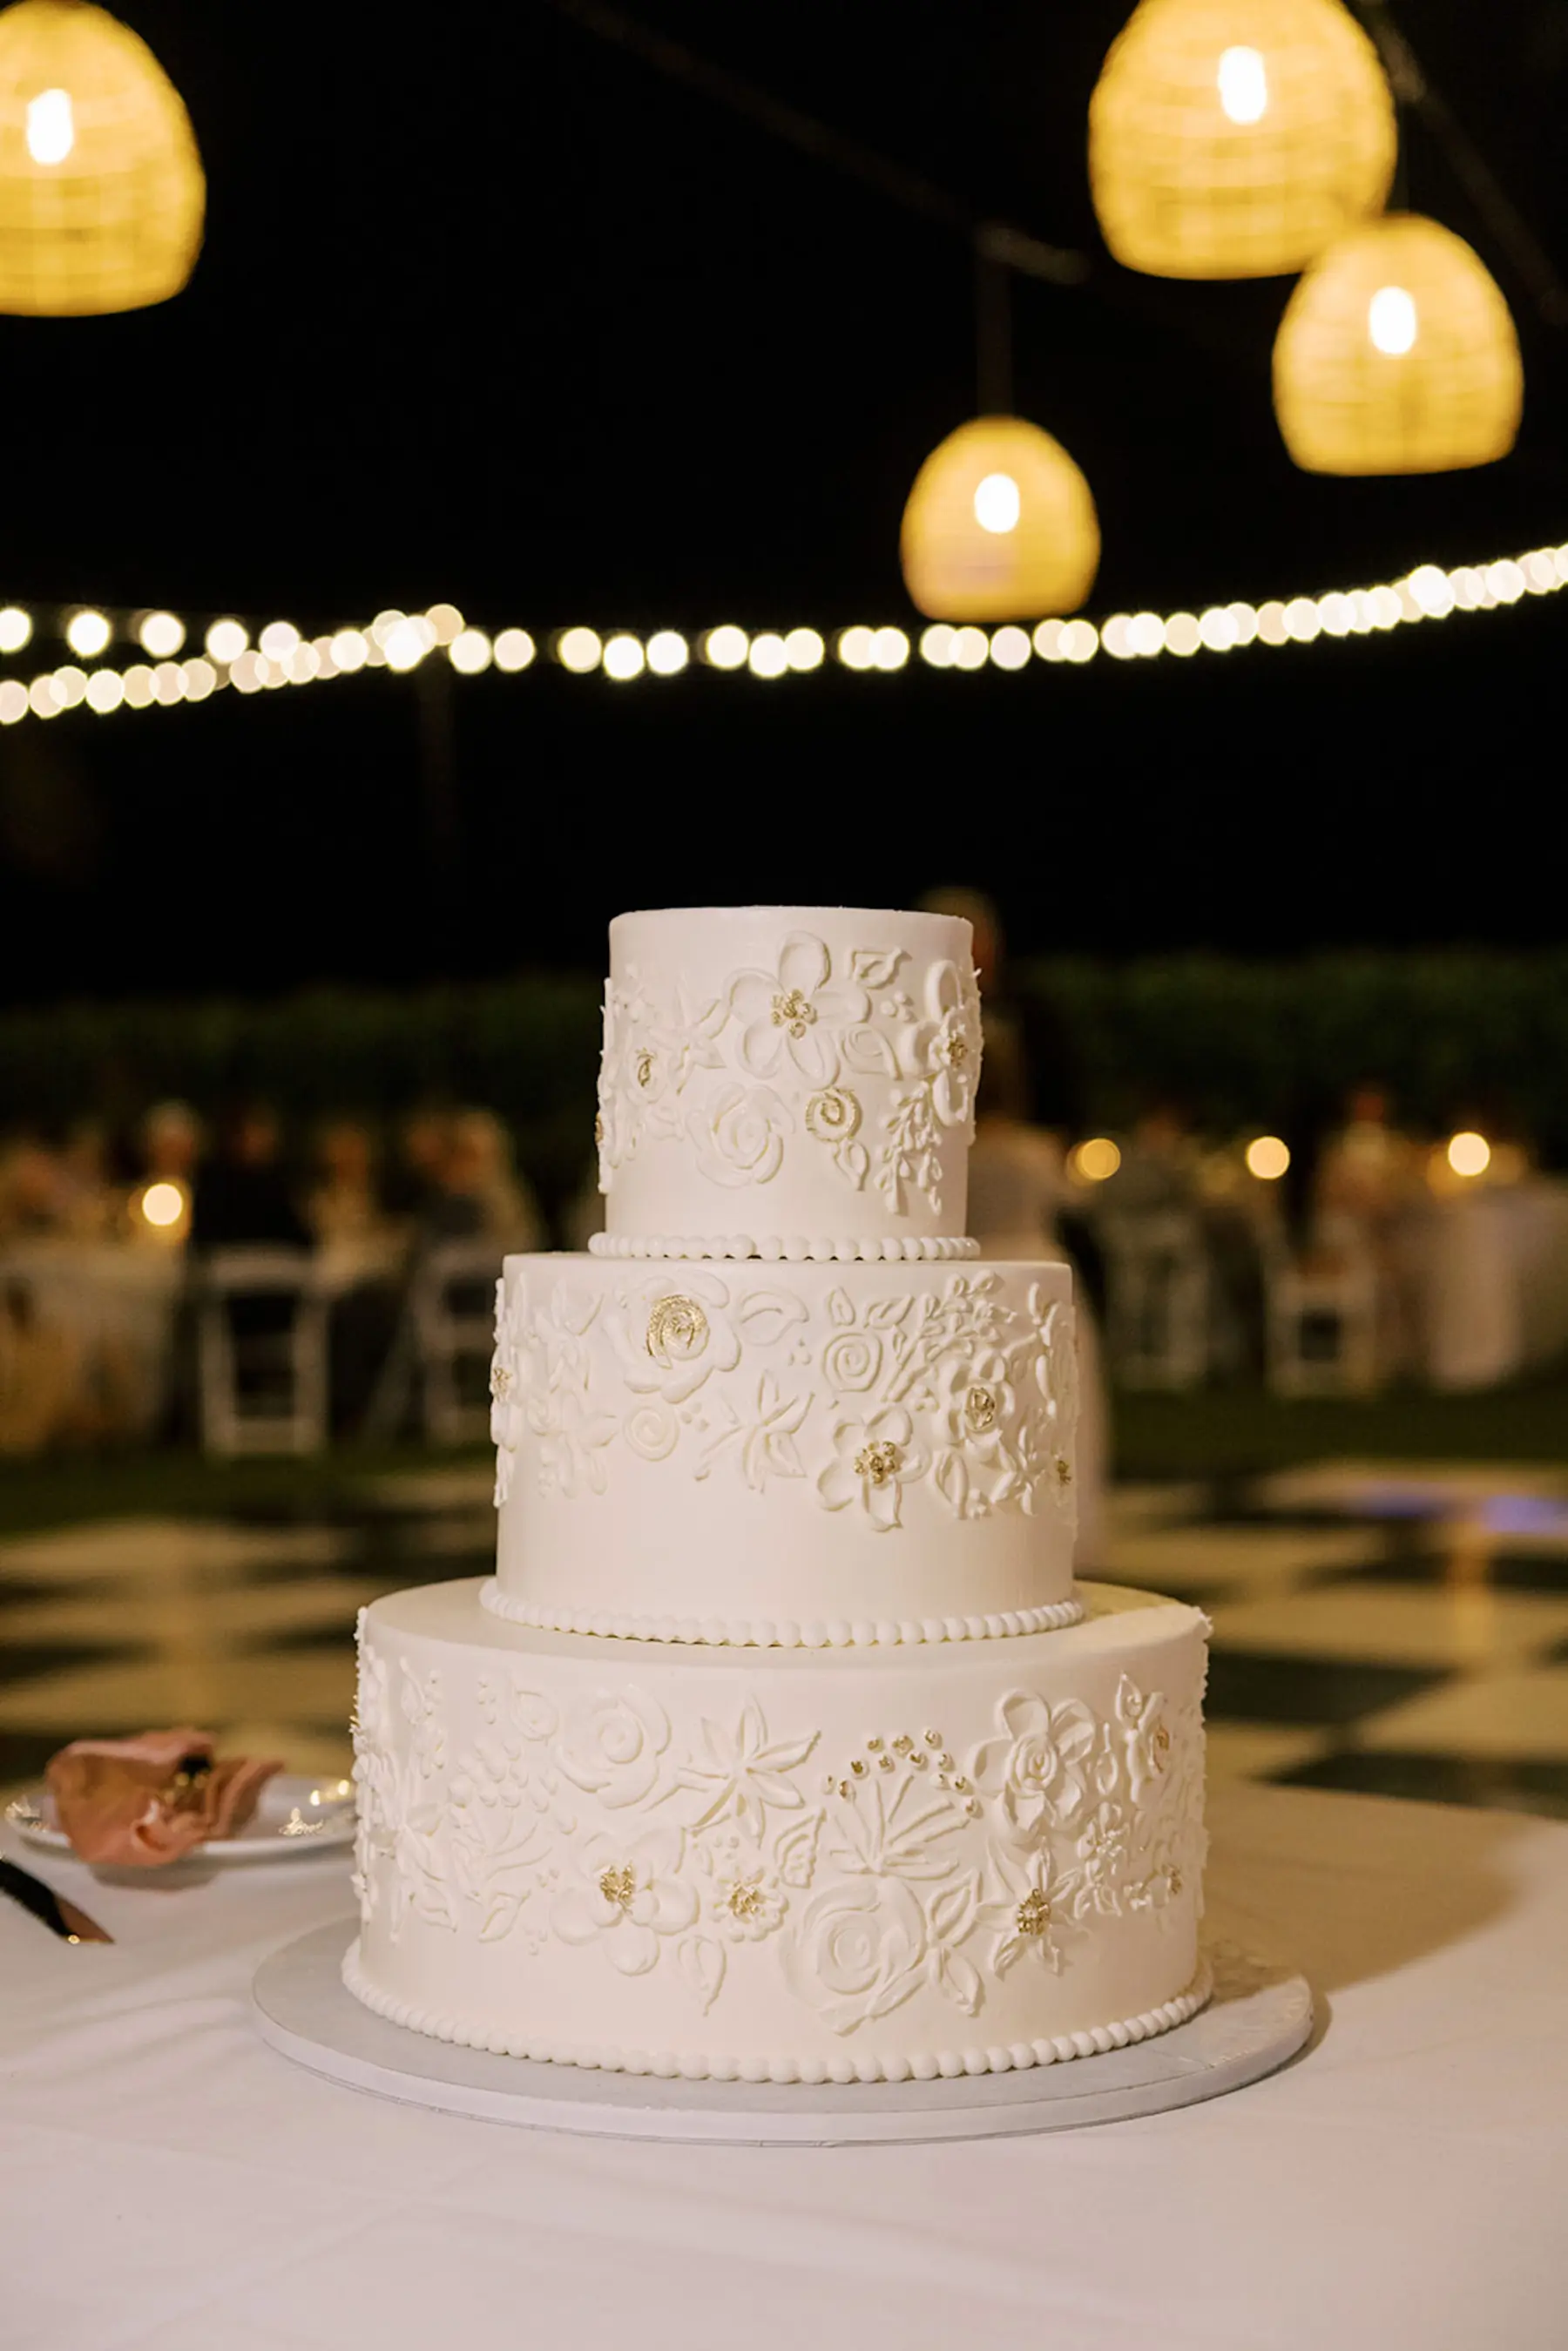 Round Three-Tiered White Wedding Cake with Flower Designs Inspiration